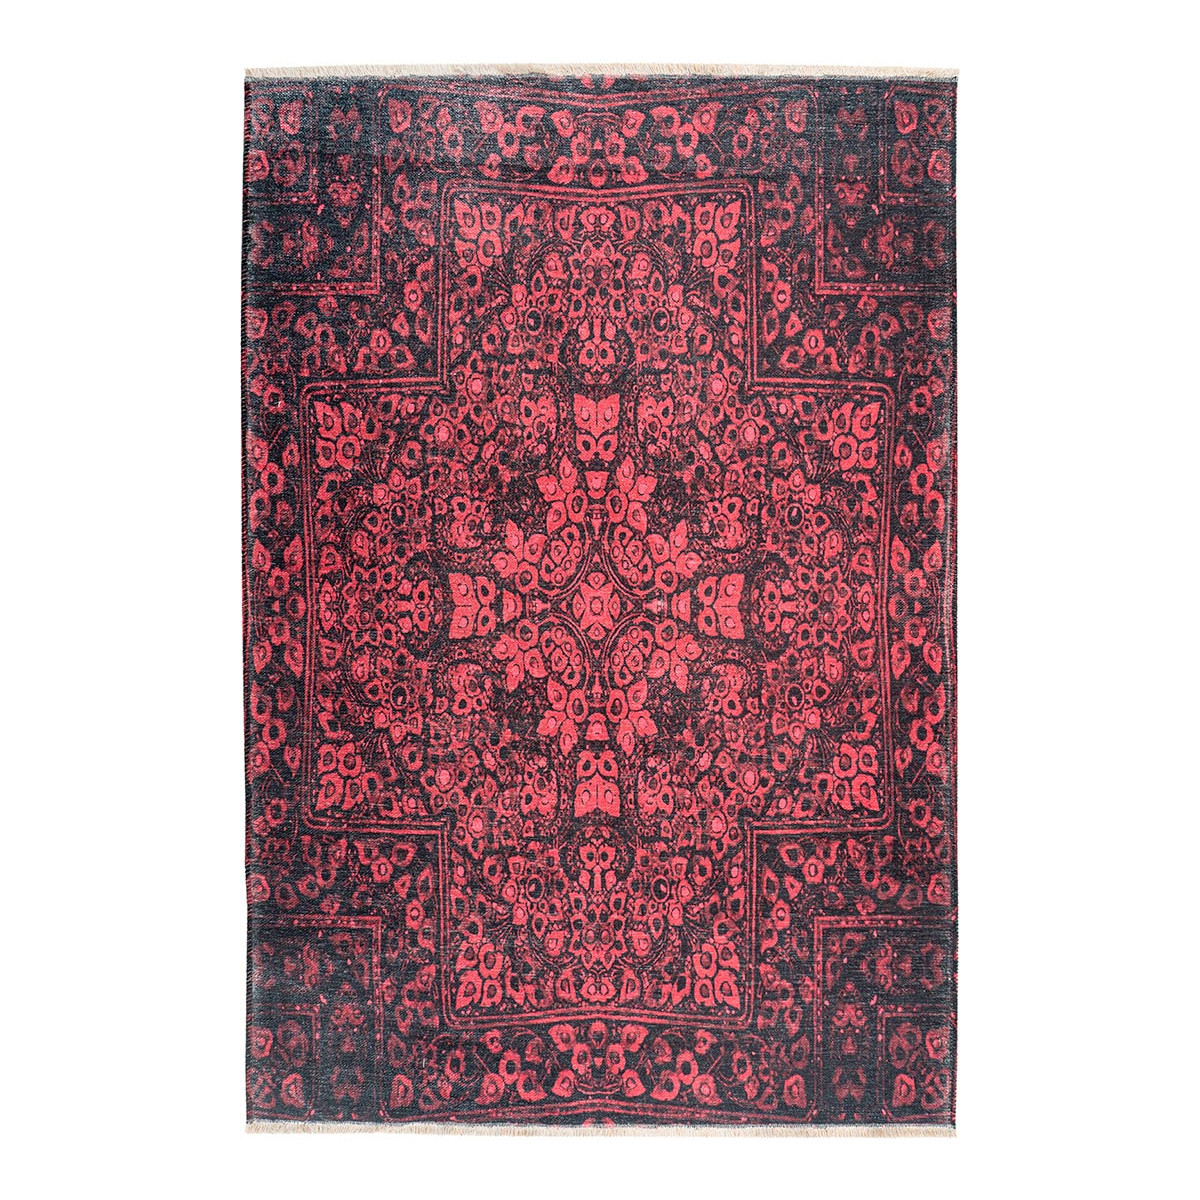 Tapis ethnique en polyester rubis 75x150